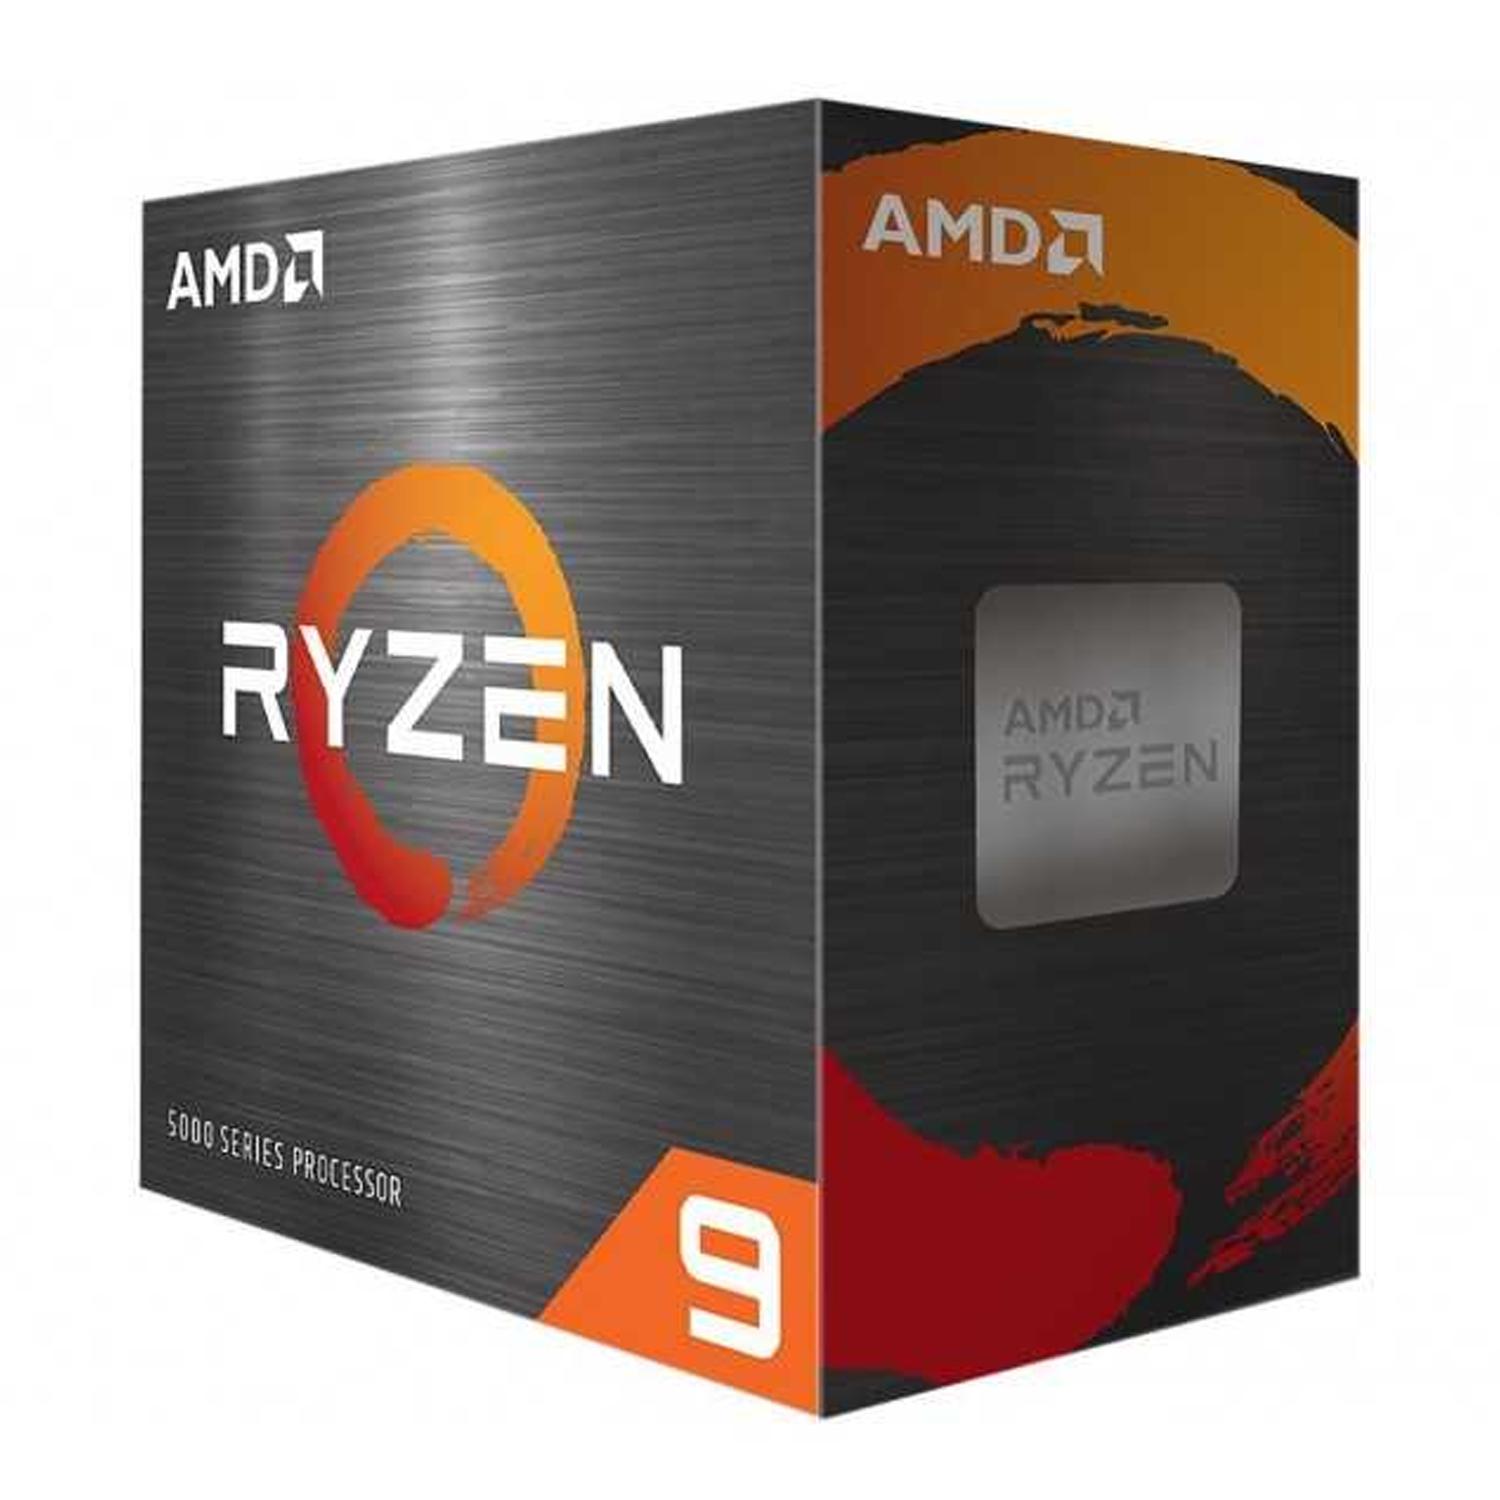 Bundle AMD